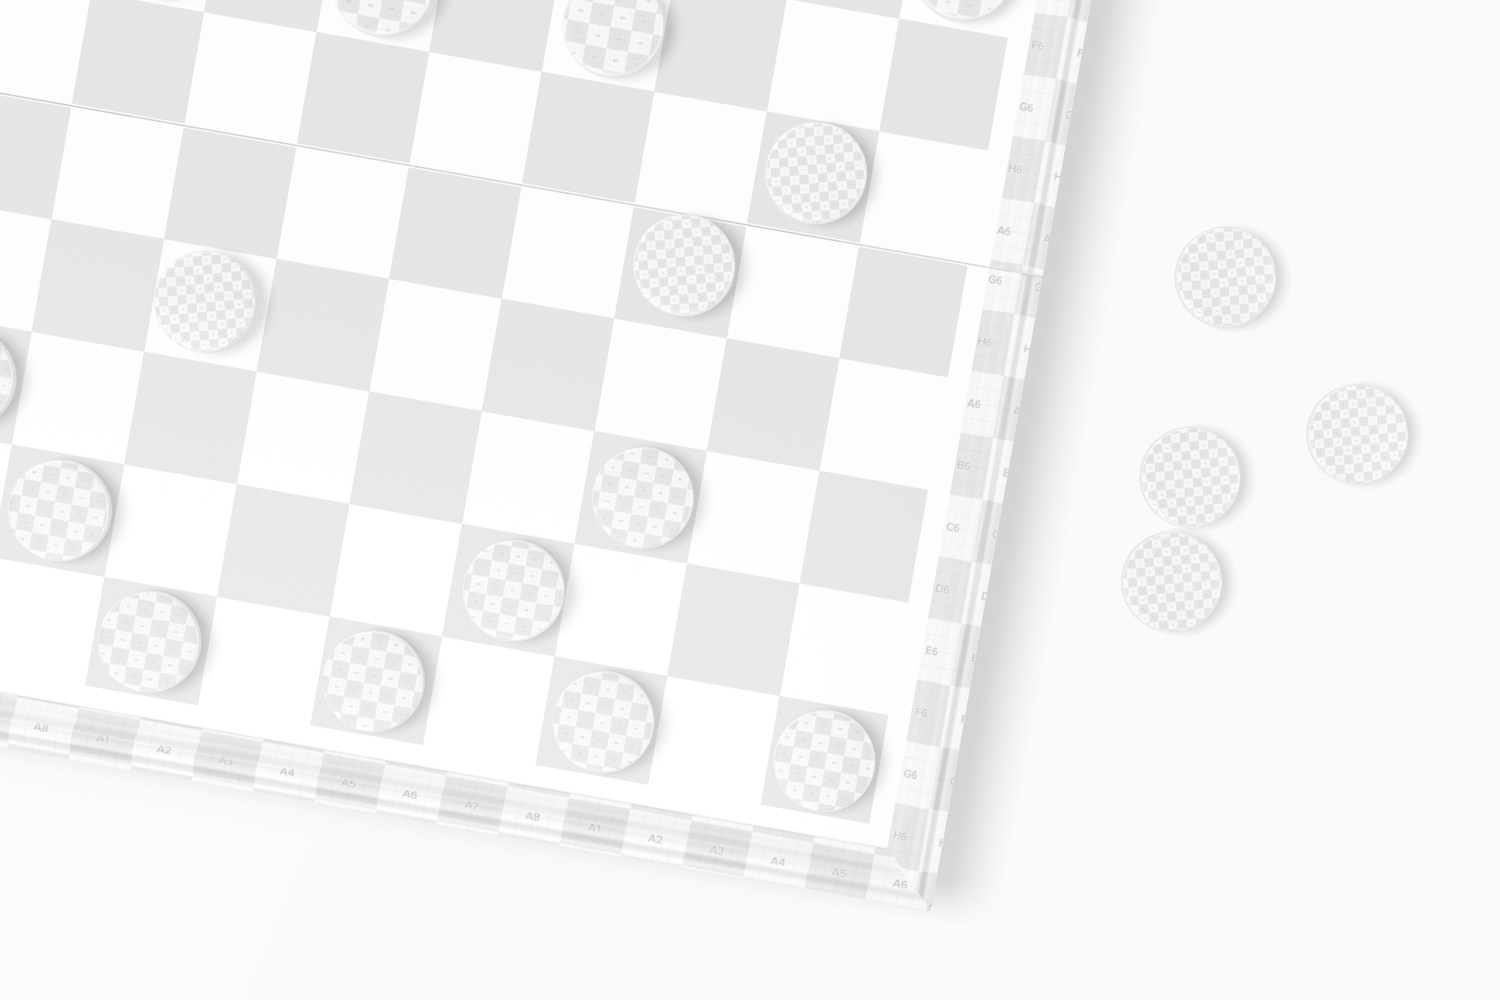 Checkers Board Mockup, Close Up